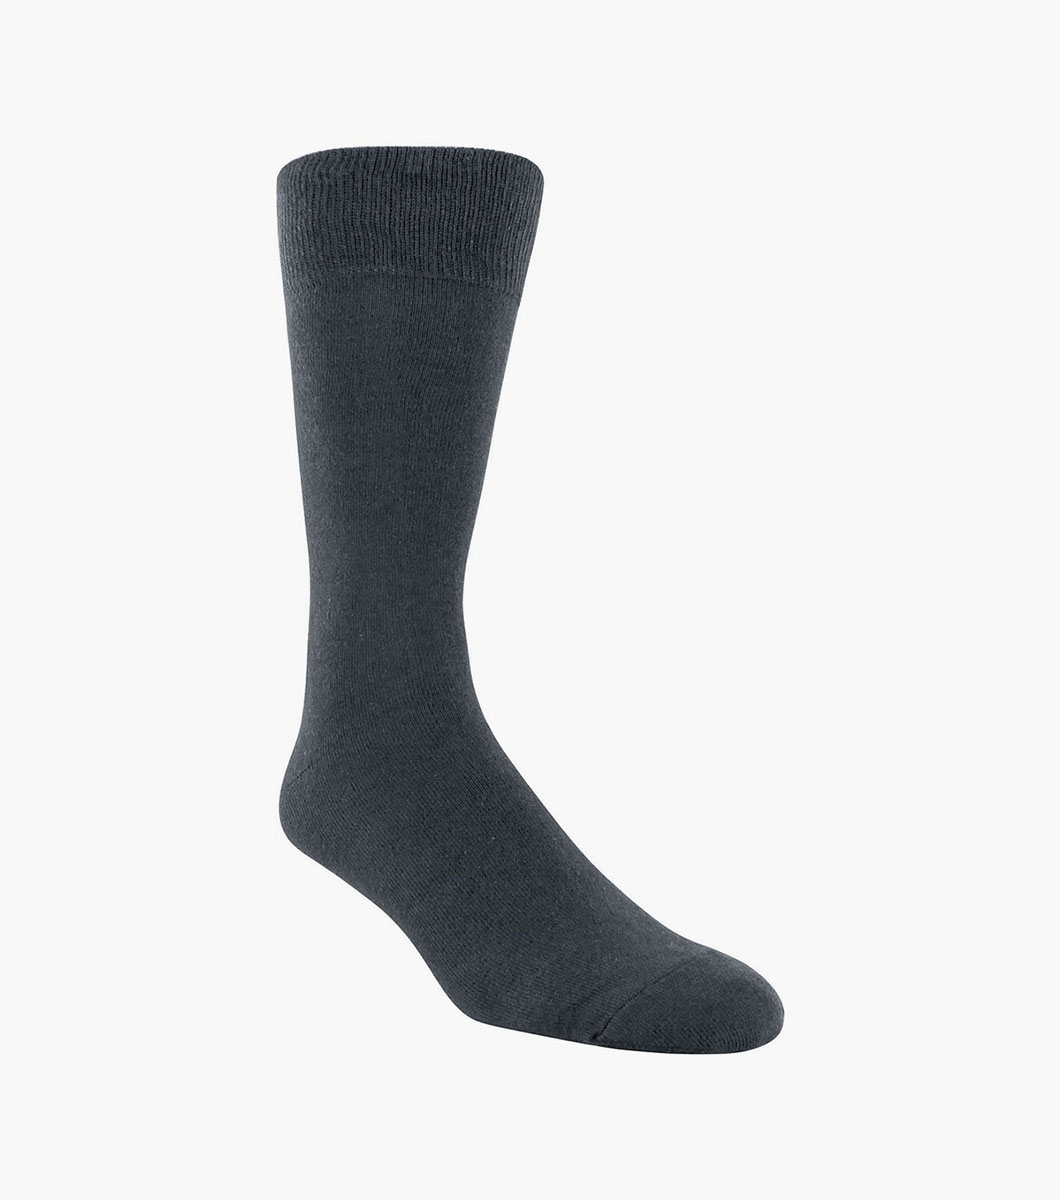 Flat Knit Men's Crew Dress Socks Men’s Socks | Florsheim.com